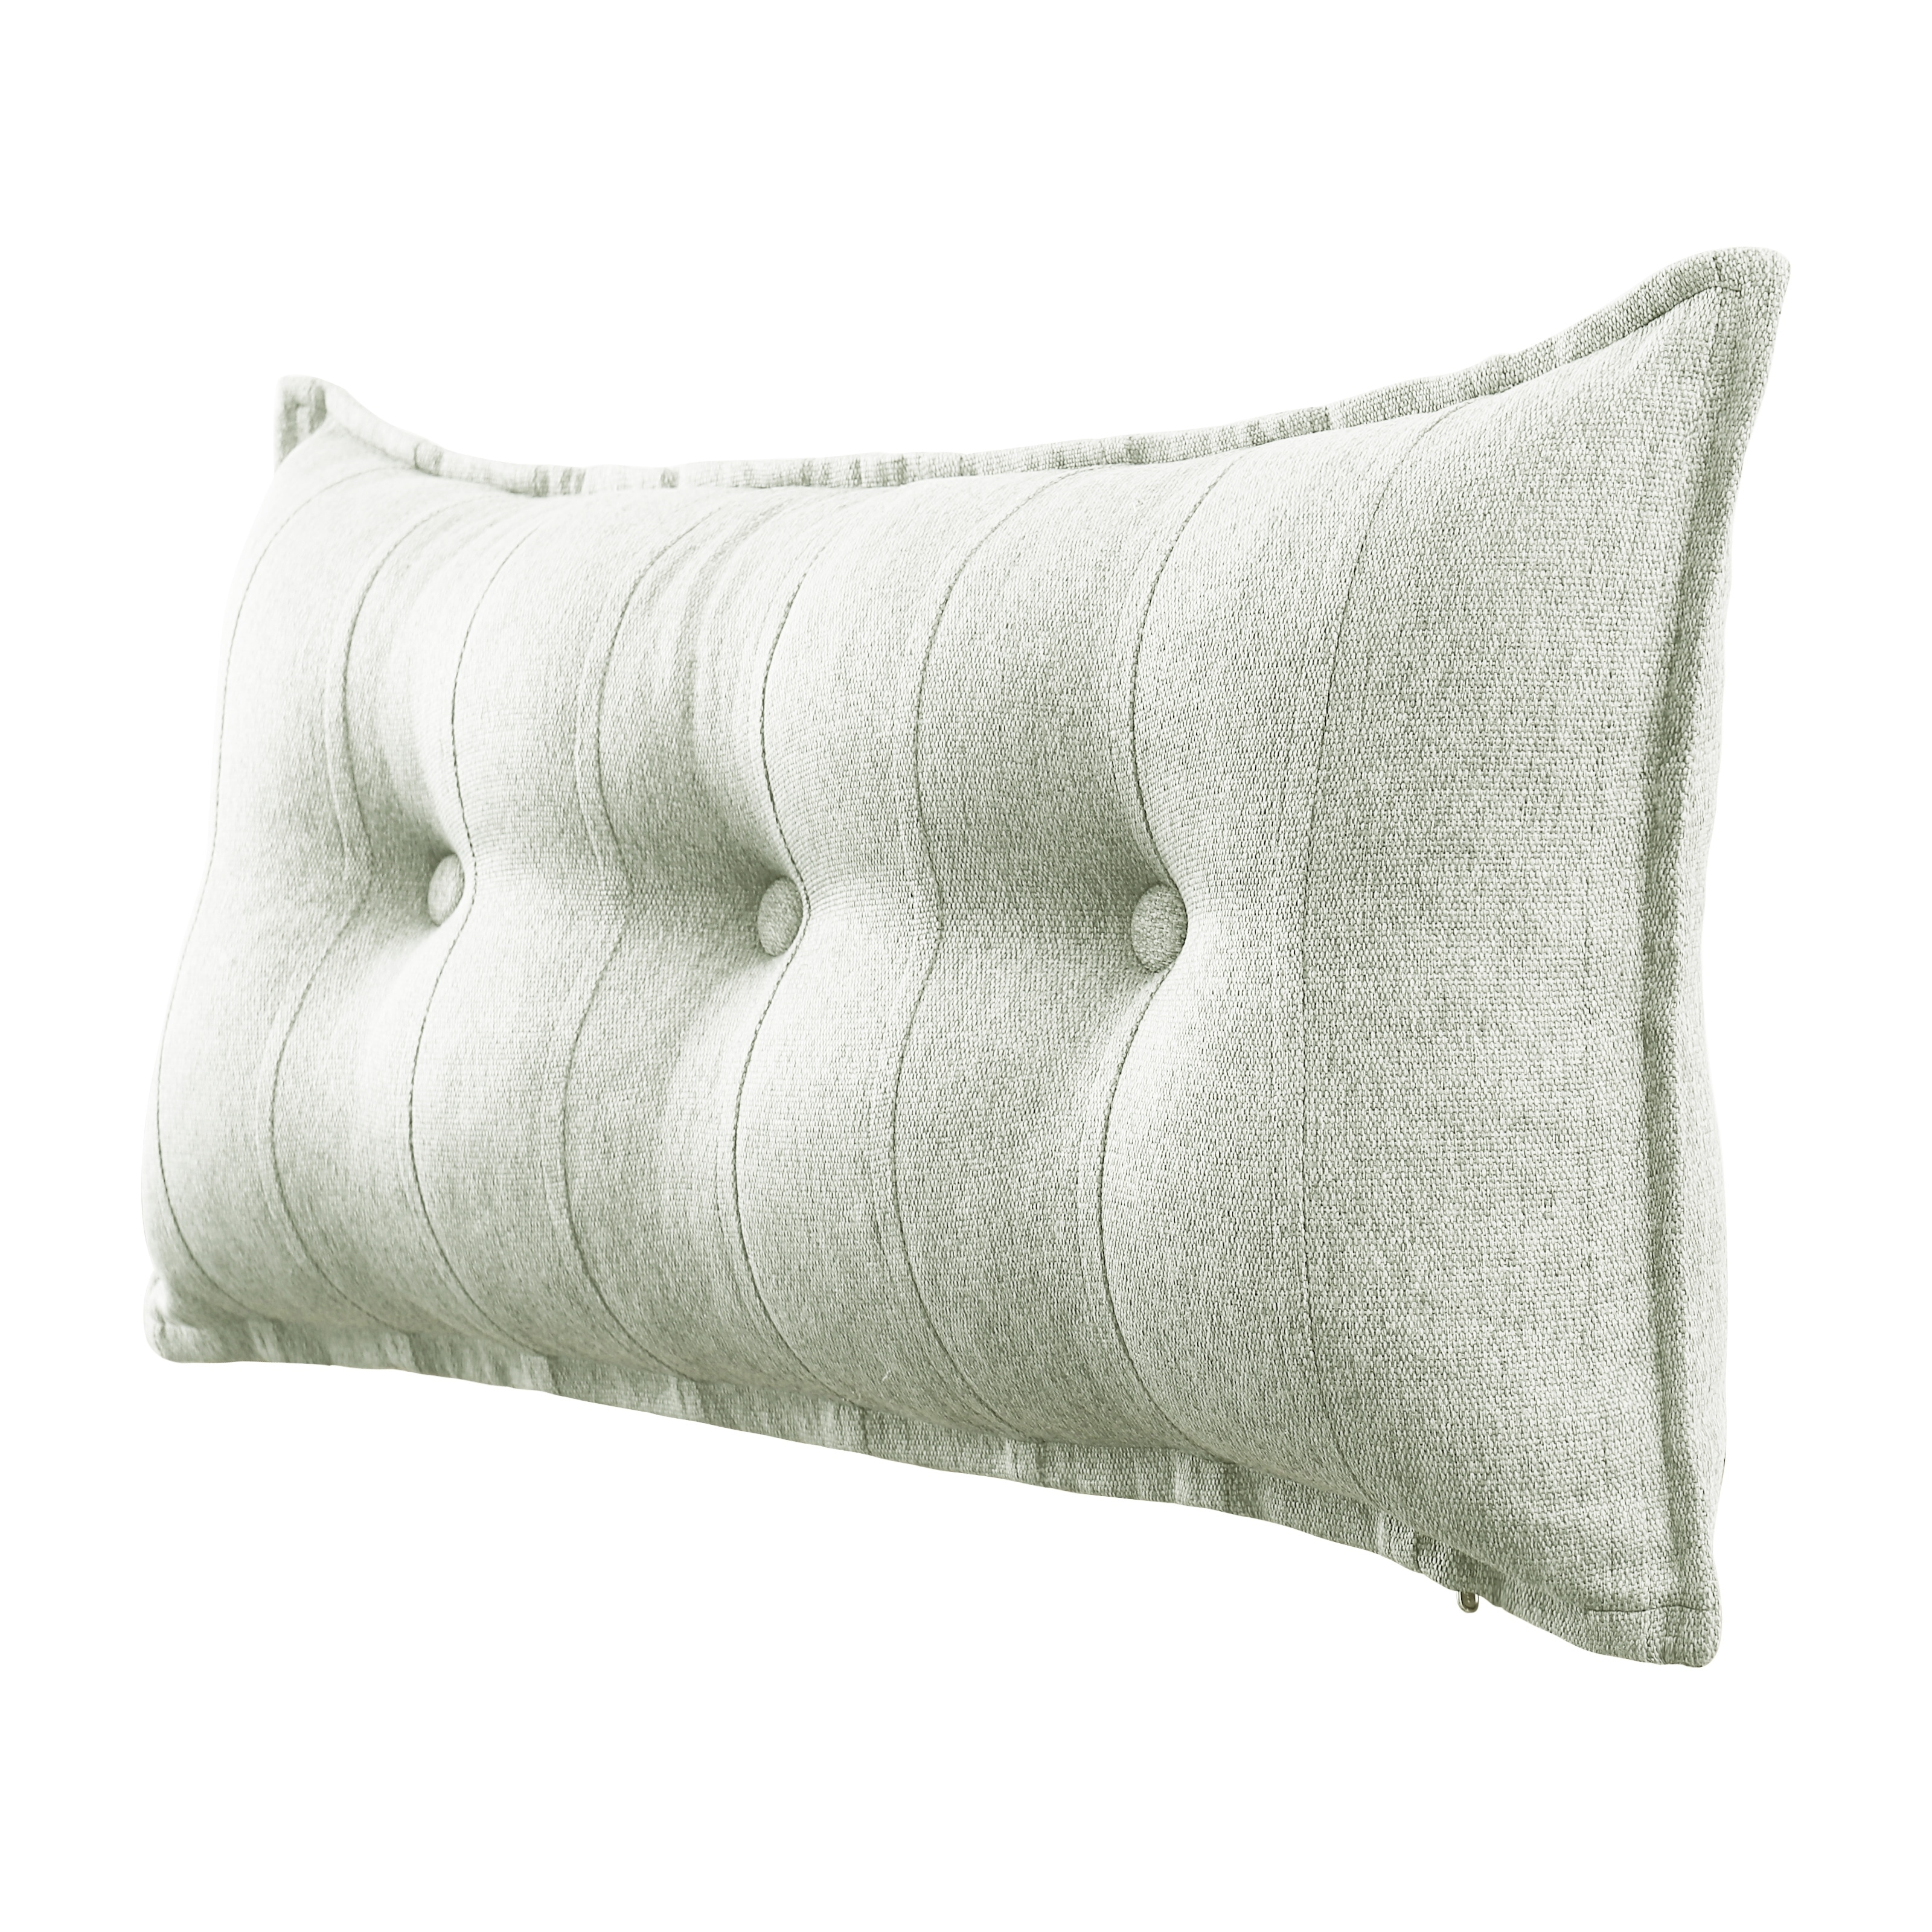 WOWMAX Body Pillow Bed Rest Side Sleeper Pillow Back Support Lumbar Pillow  - Bed Bath & Beyond - 35628251